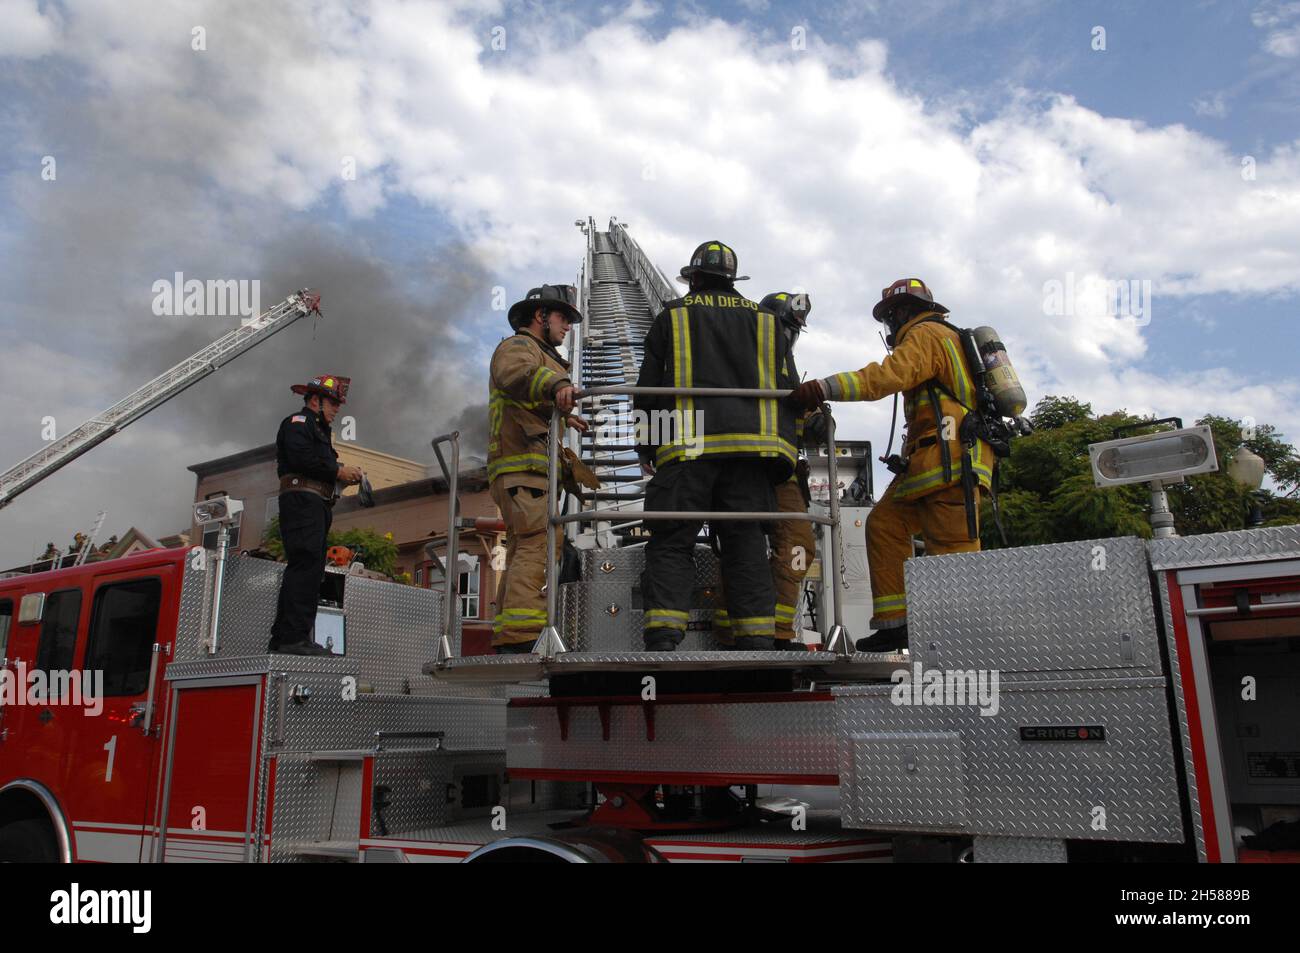 San Diego City Fire Fighters auf dem Stock bei einem Strukturbrand in San Diego, Kalifornien Stockfoto